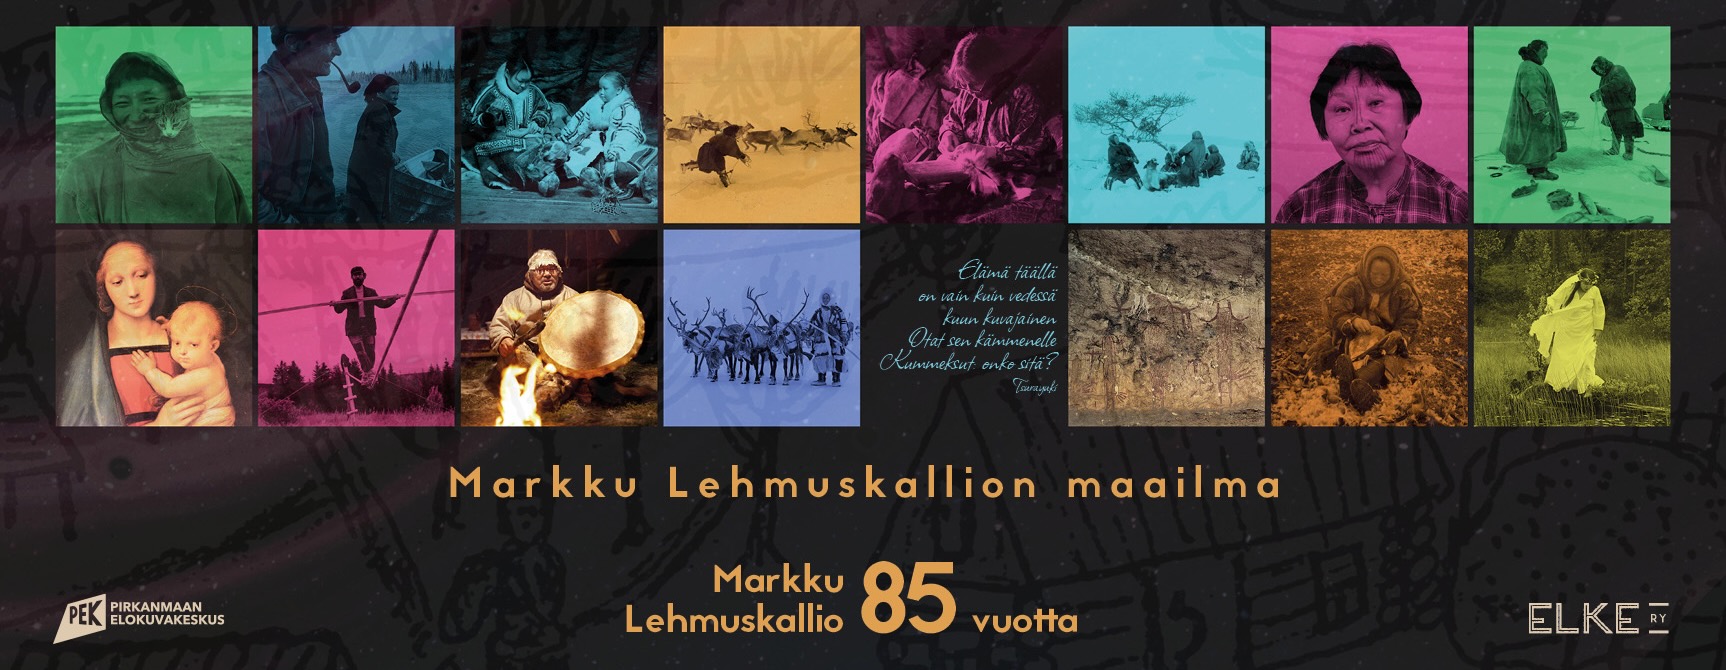 Markku Lehmuskallio juliste